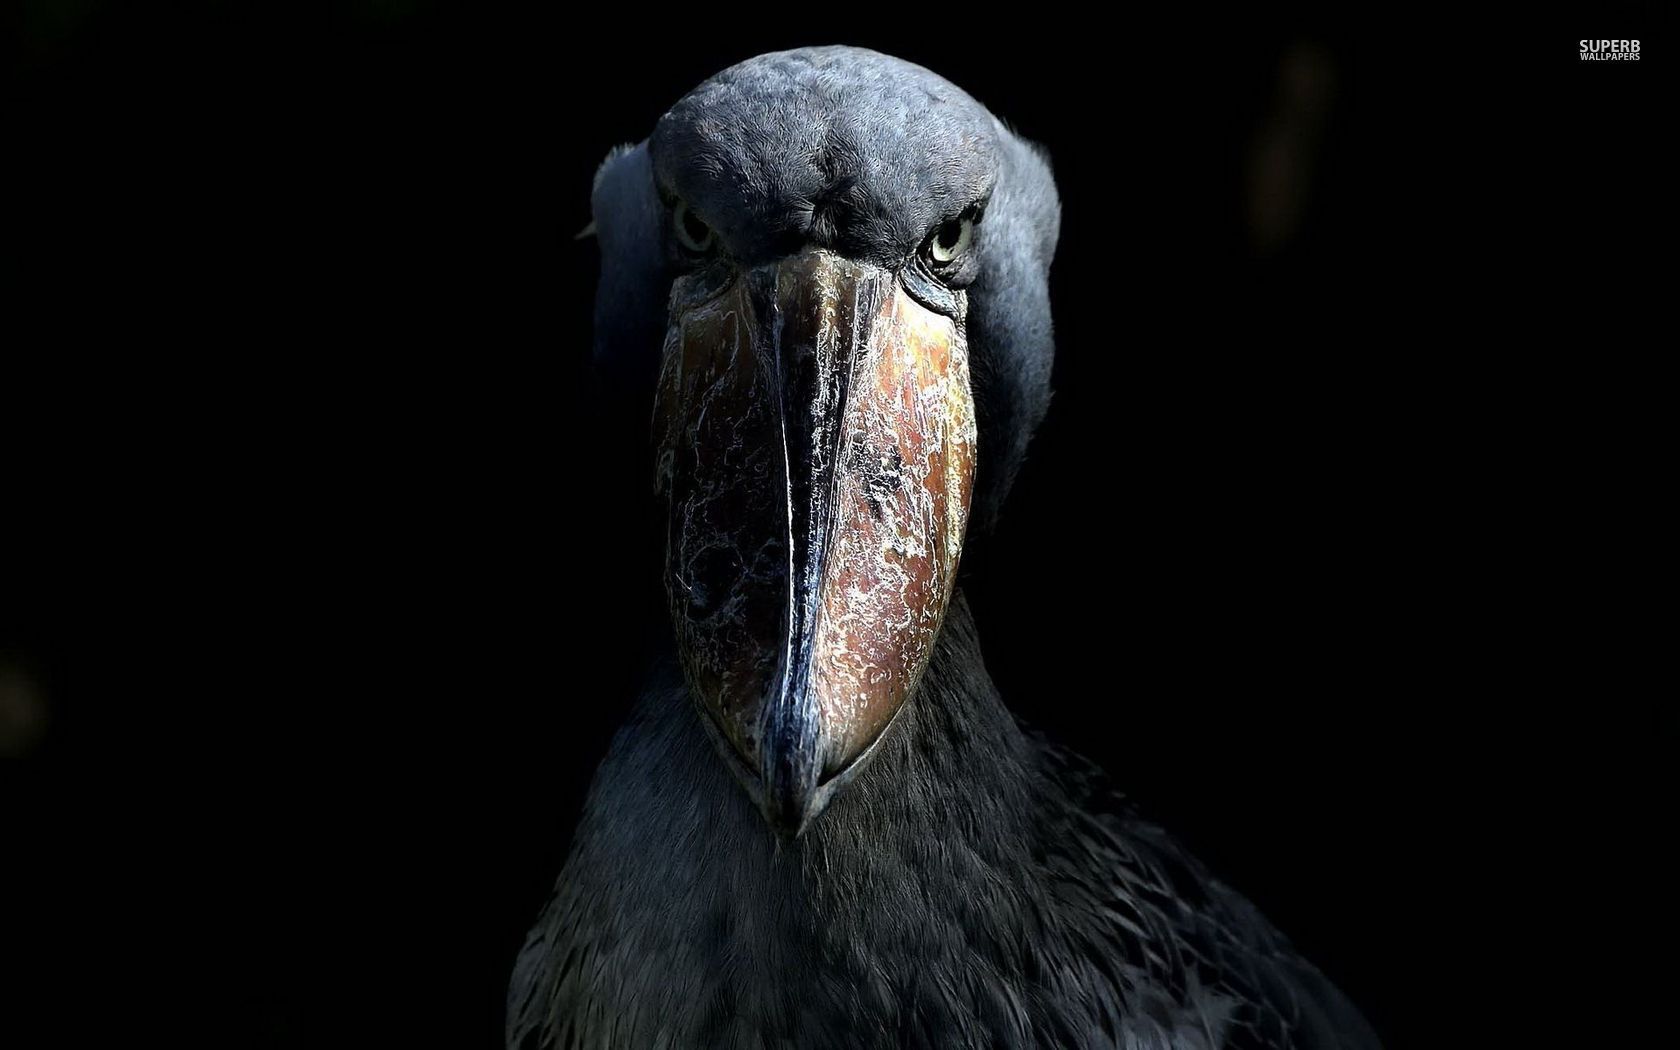 the shoebill stork